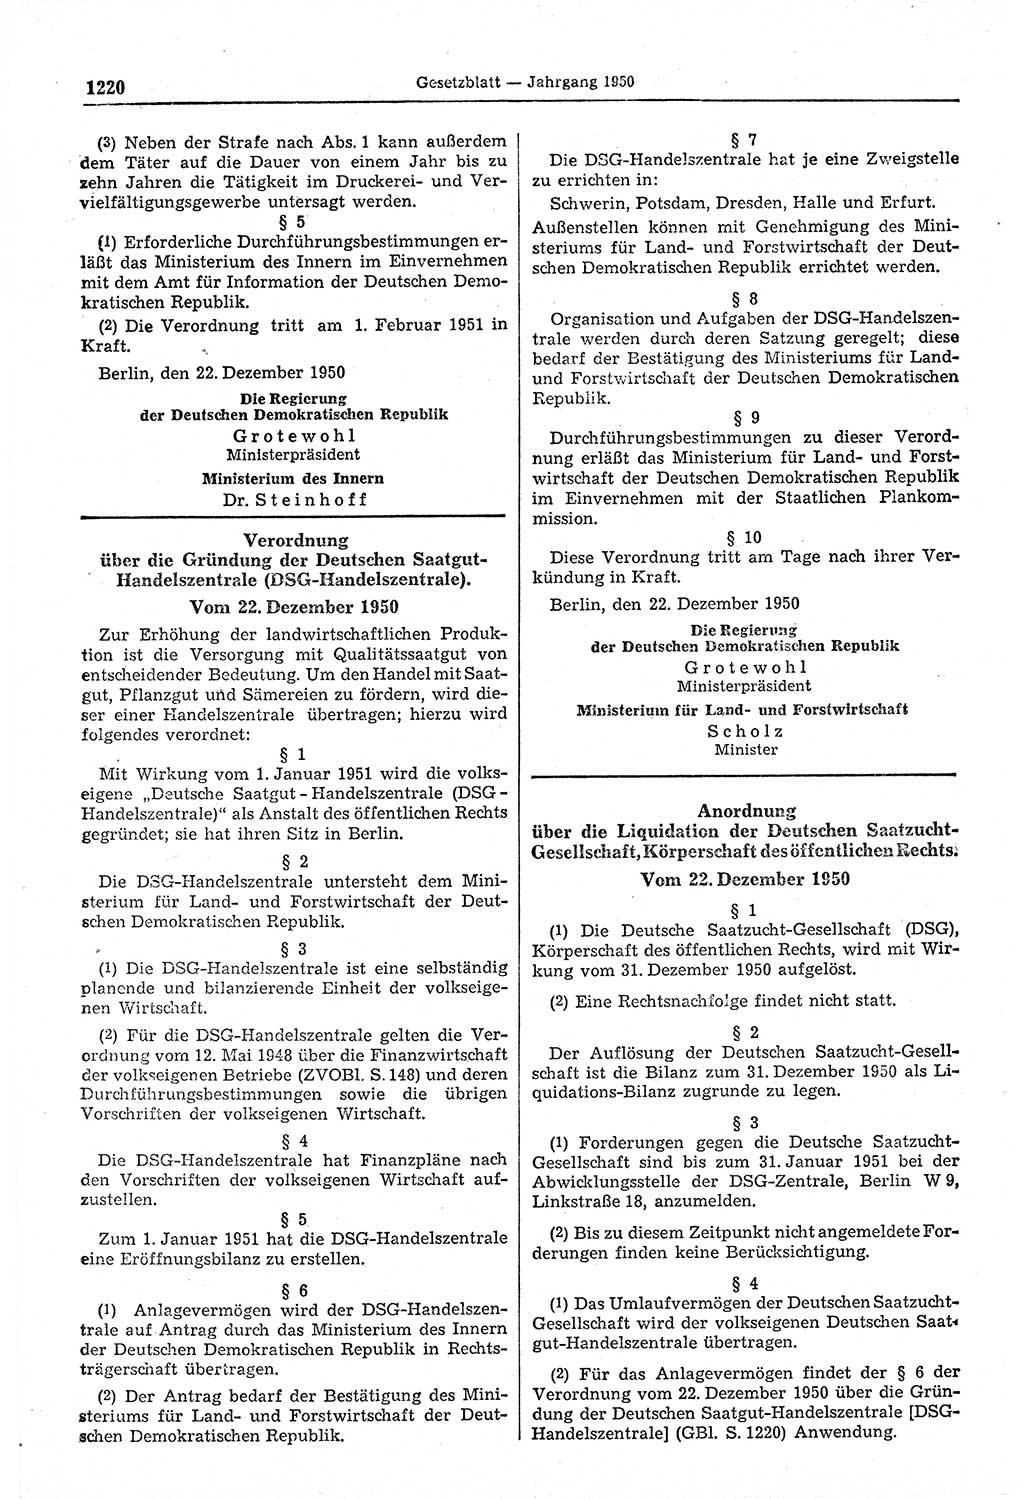 Gesetzblatt (GBl.) der Deutschen Demokratischen Republik (DDR) 1950, Seite 1220 (GBl. DDR 1950, S. 1220)